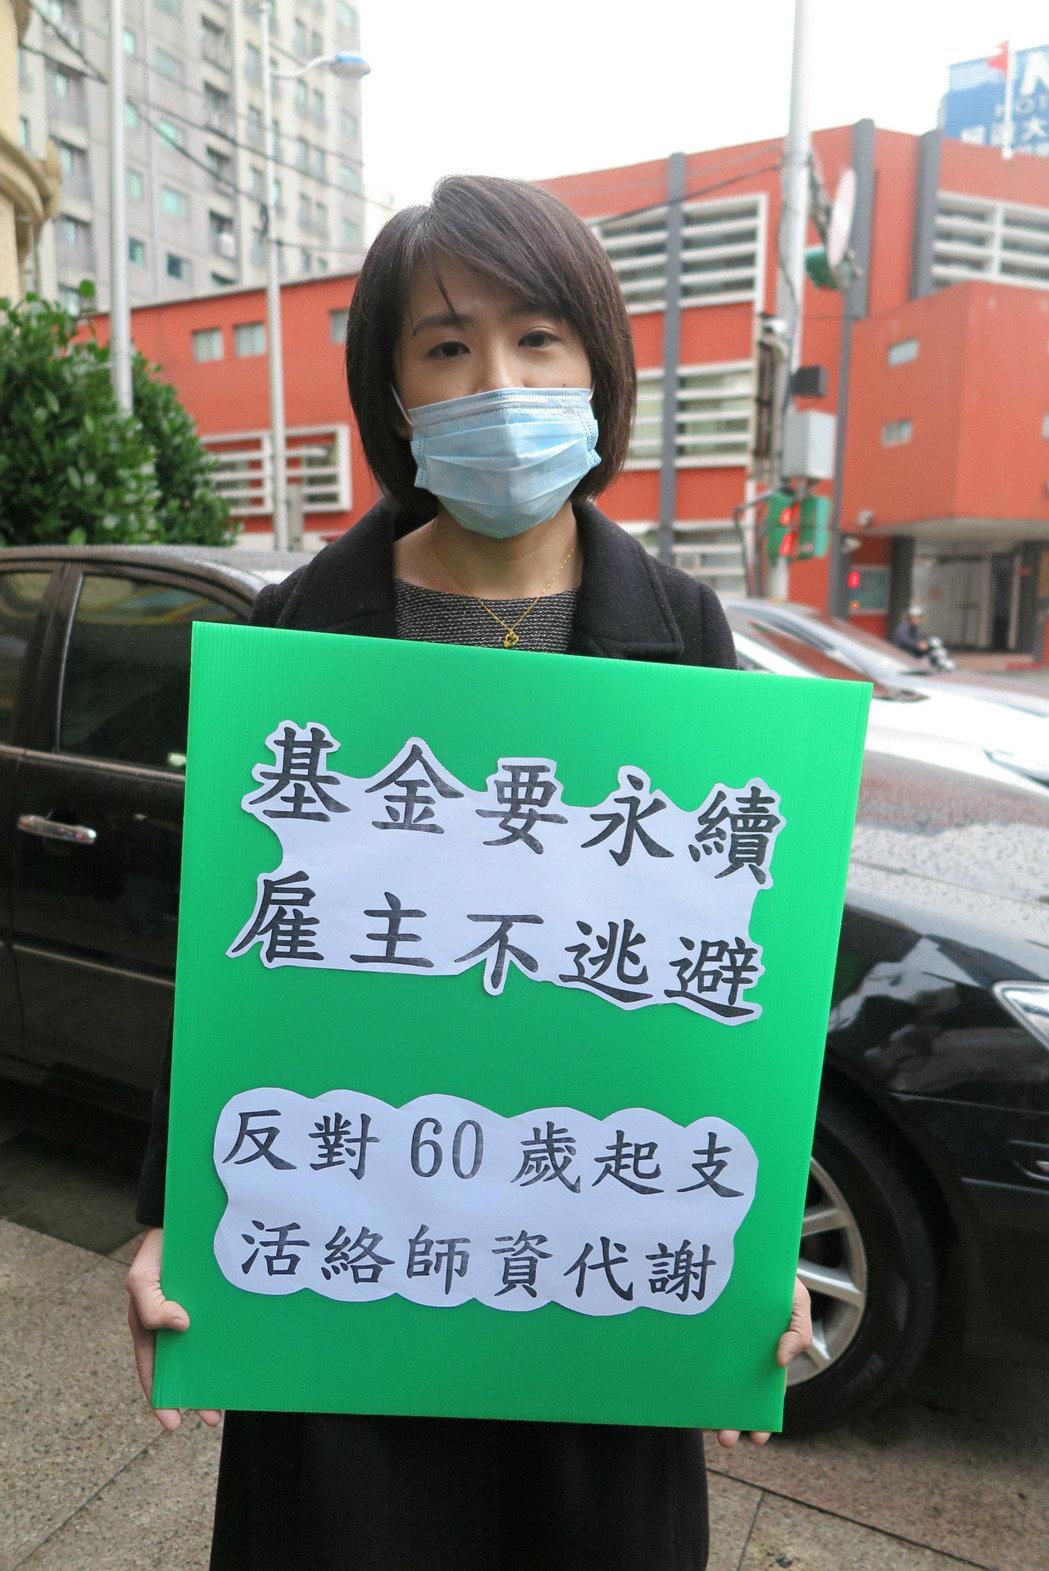 台灣200教師上街頭抗議年金改革 工會:學生是受害者